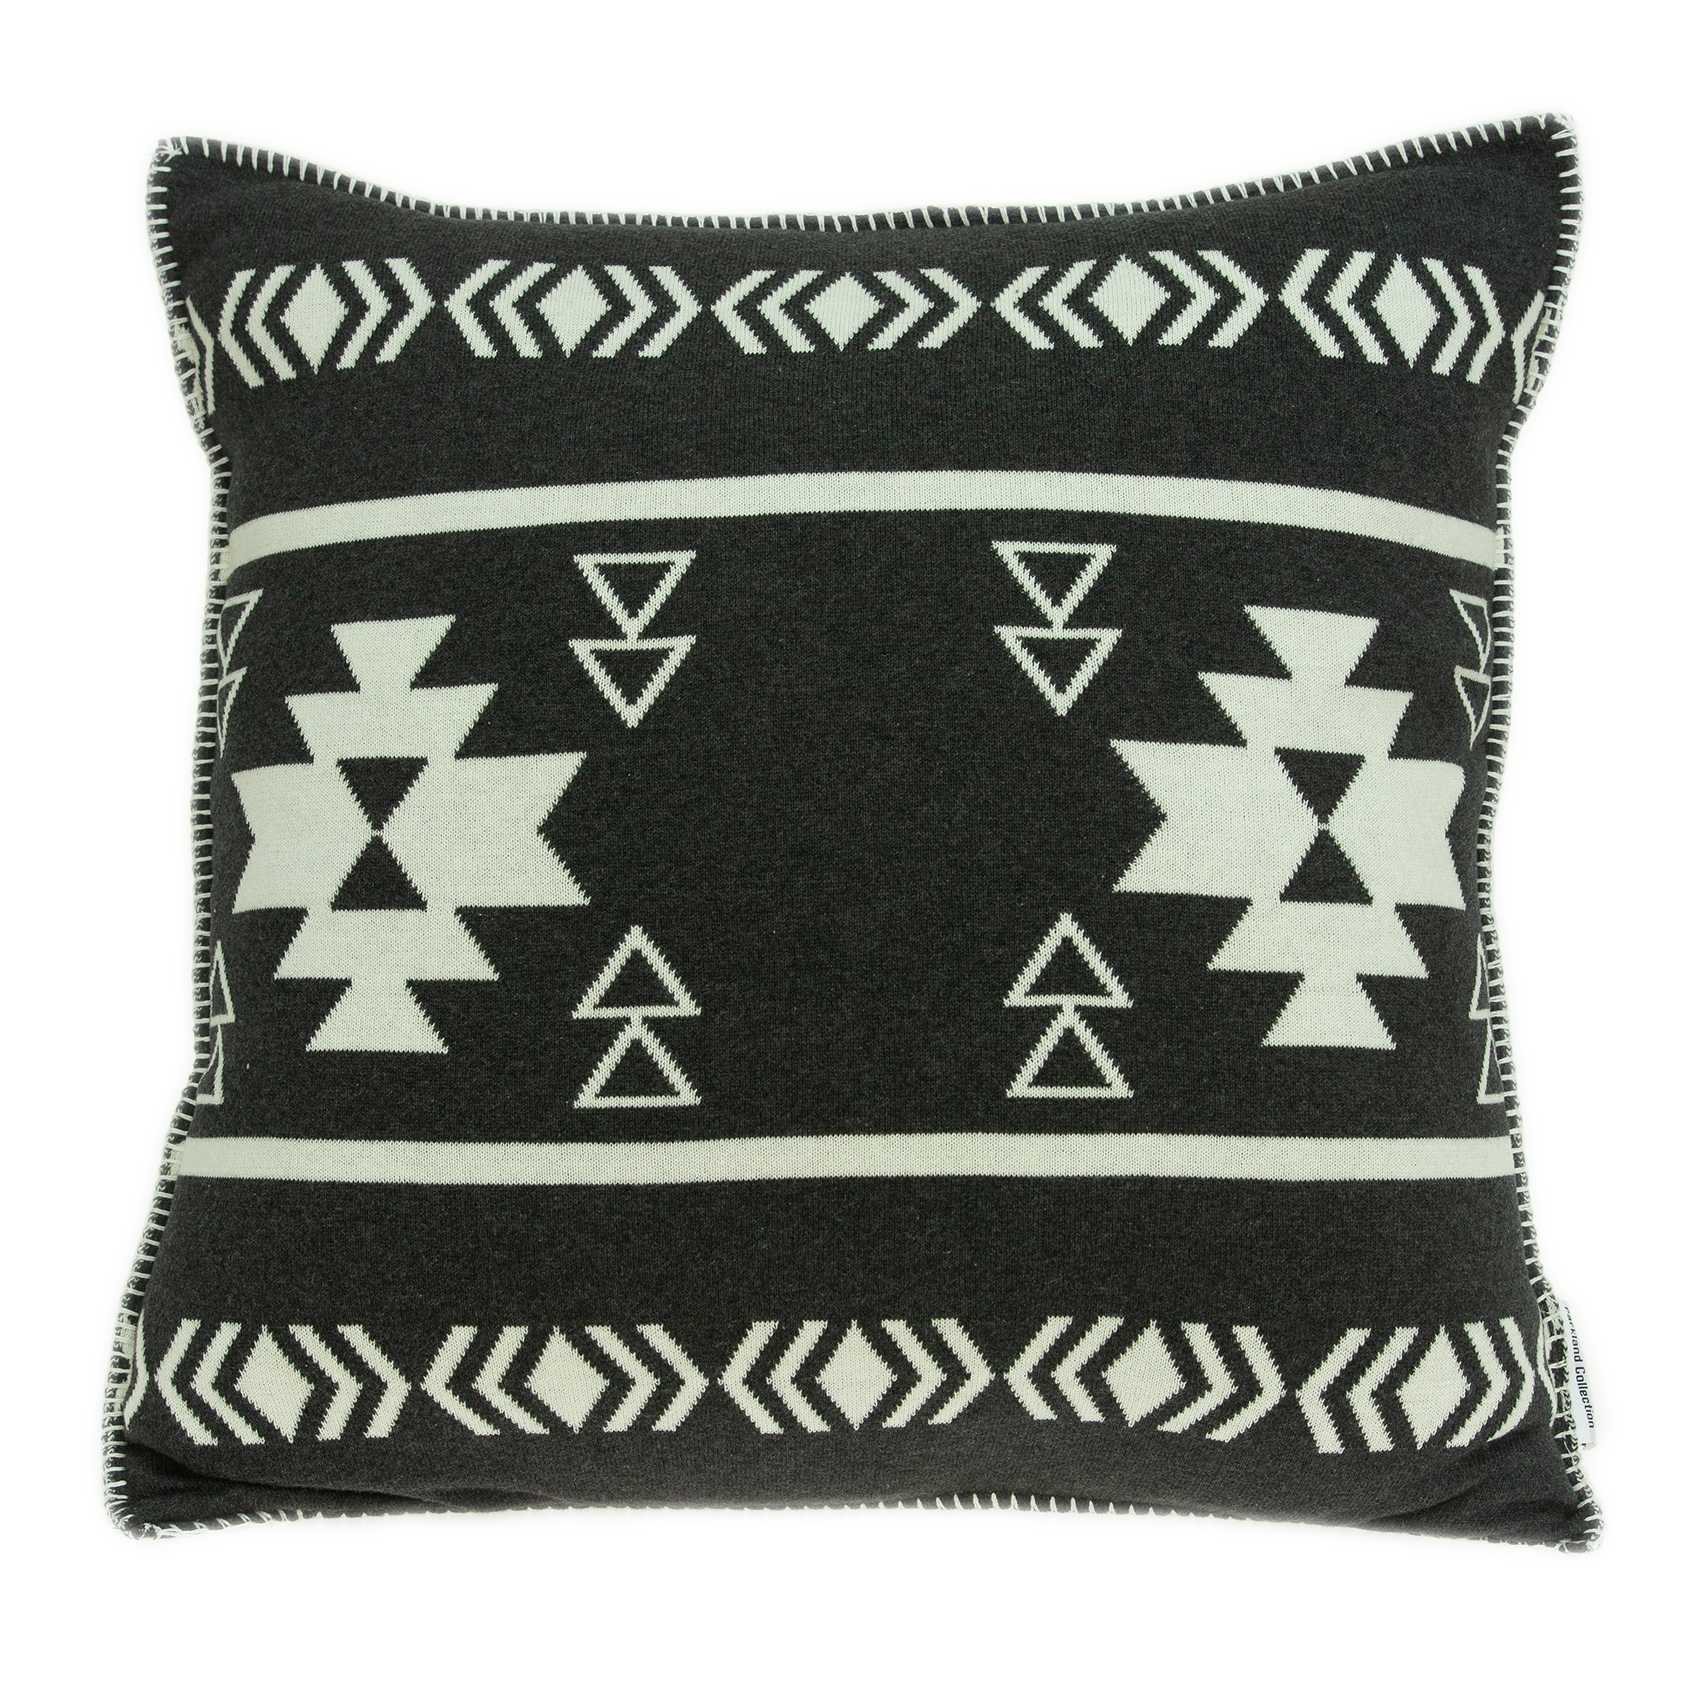 20" x 0.5" x 20" Southwest Black Pillow Cover